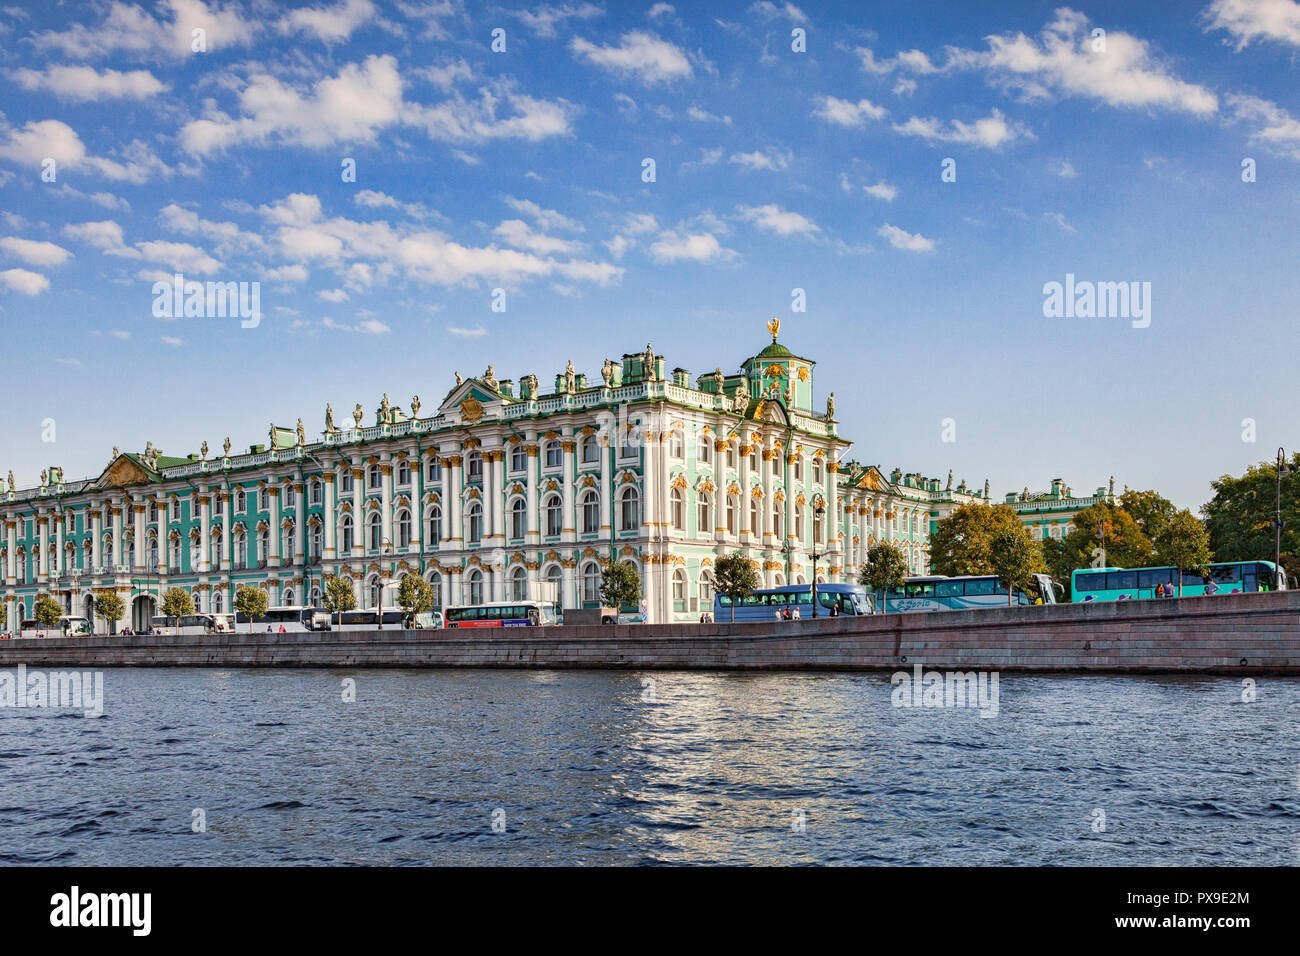 19. September 2018: St. Petersburg, Russland - Winter Palace und Eremitage, mit einer langen Linie der Reisebusse. Stockfoto